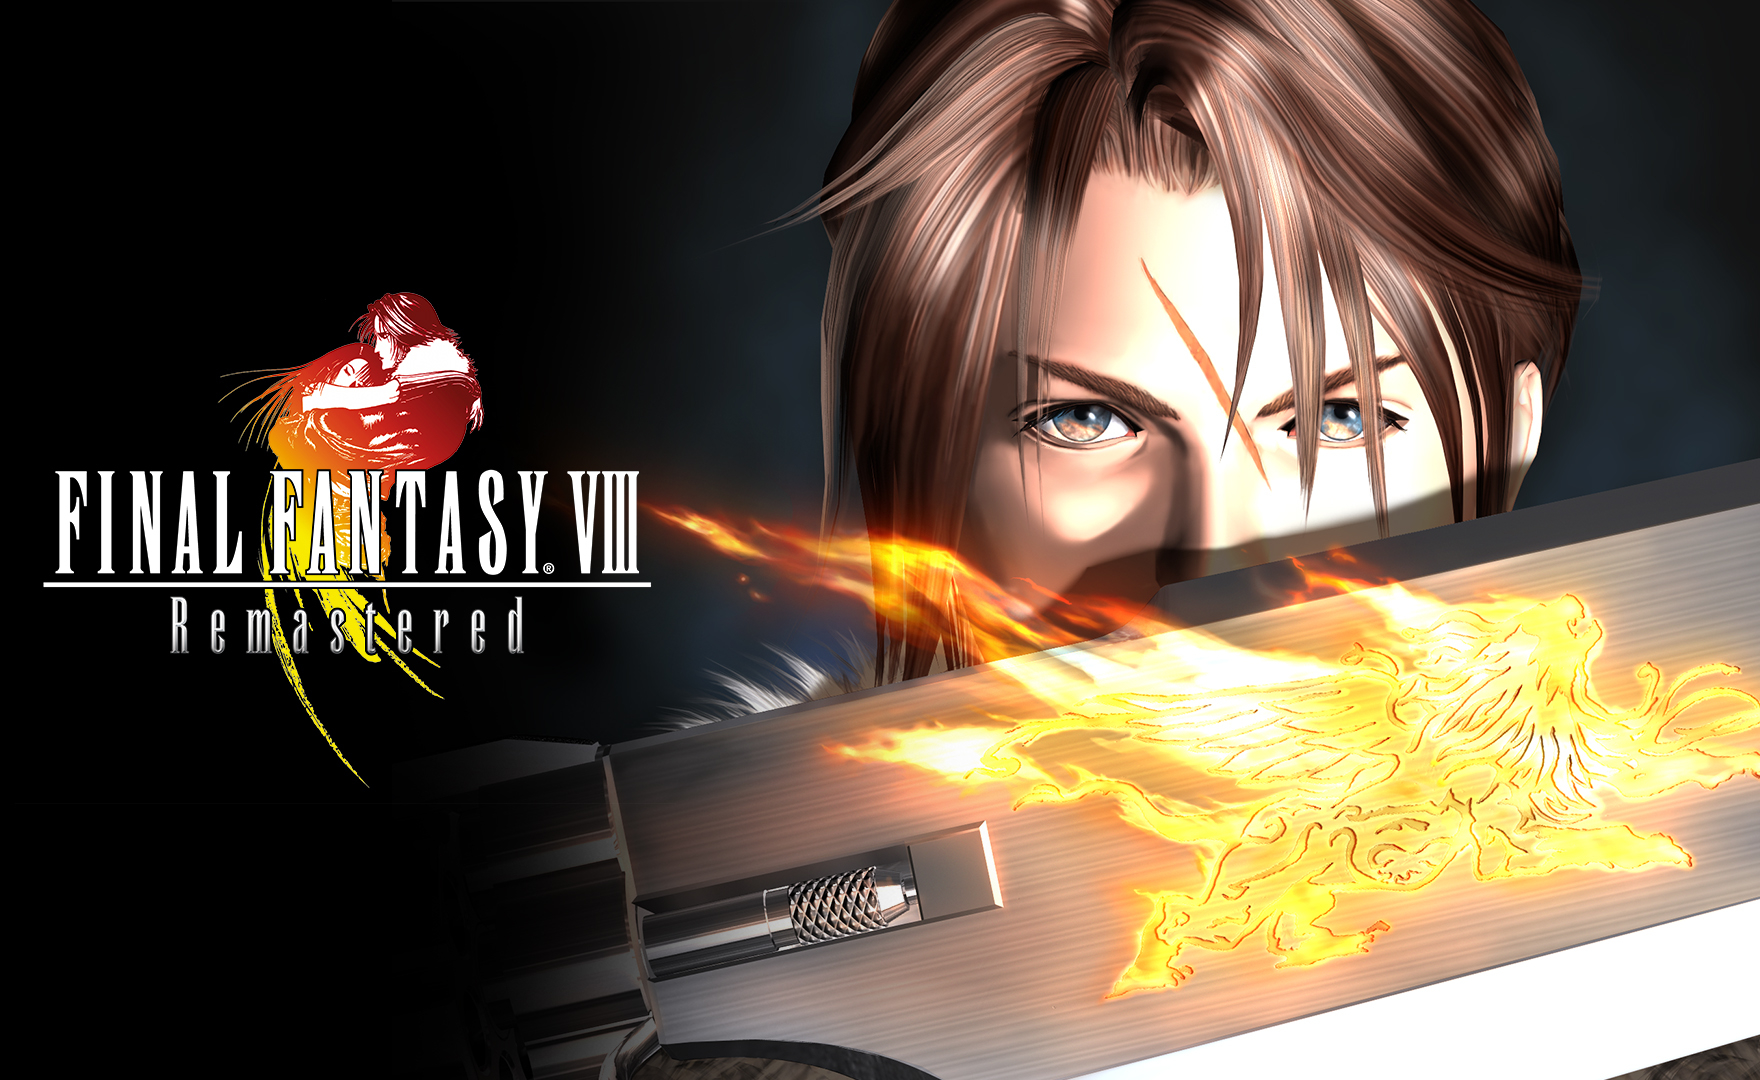 Final Fantasy 8 Remastered è stato censurato secondo alcune segnalazioni